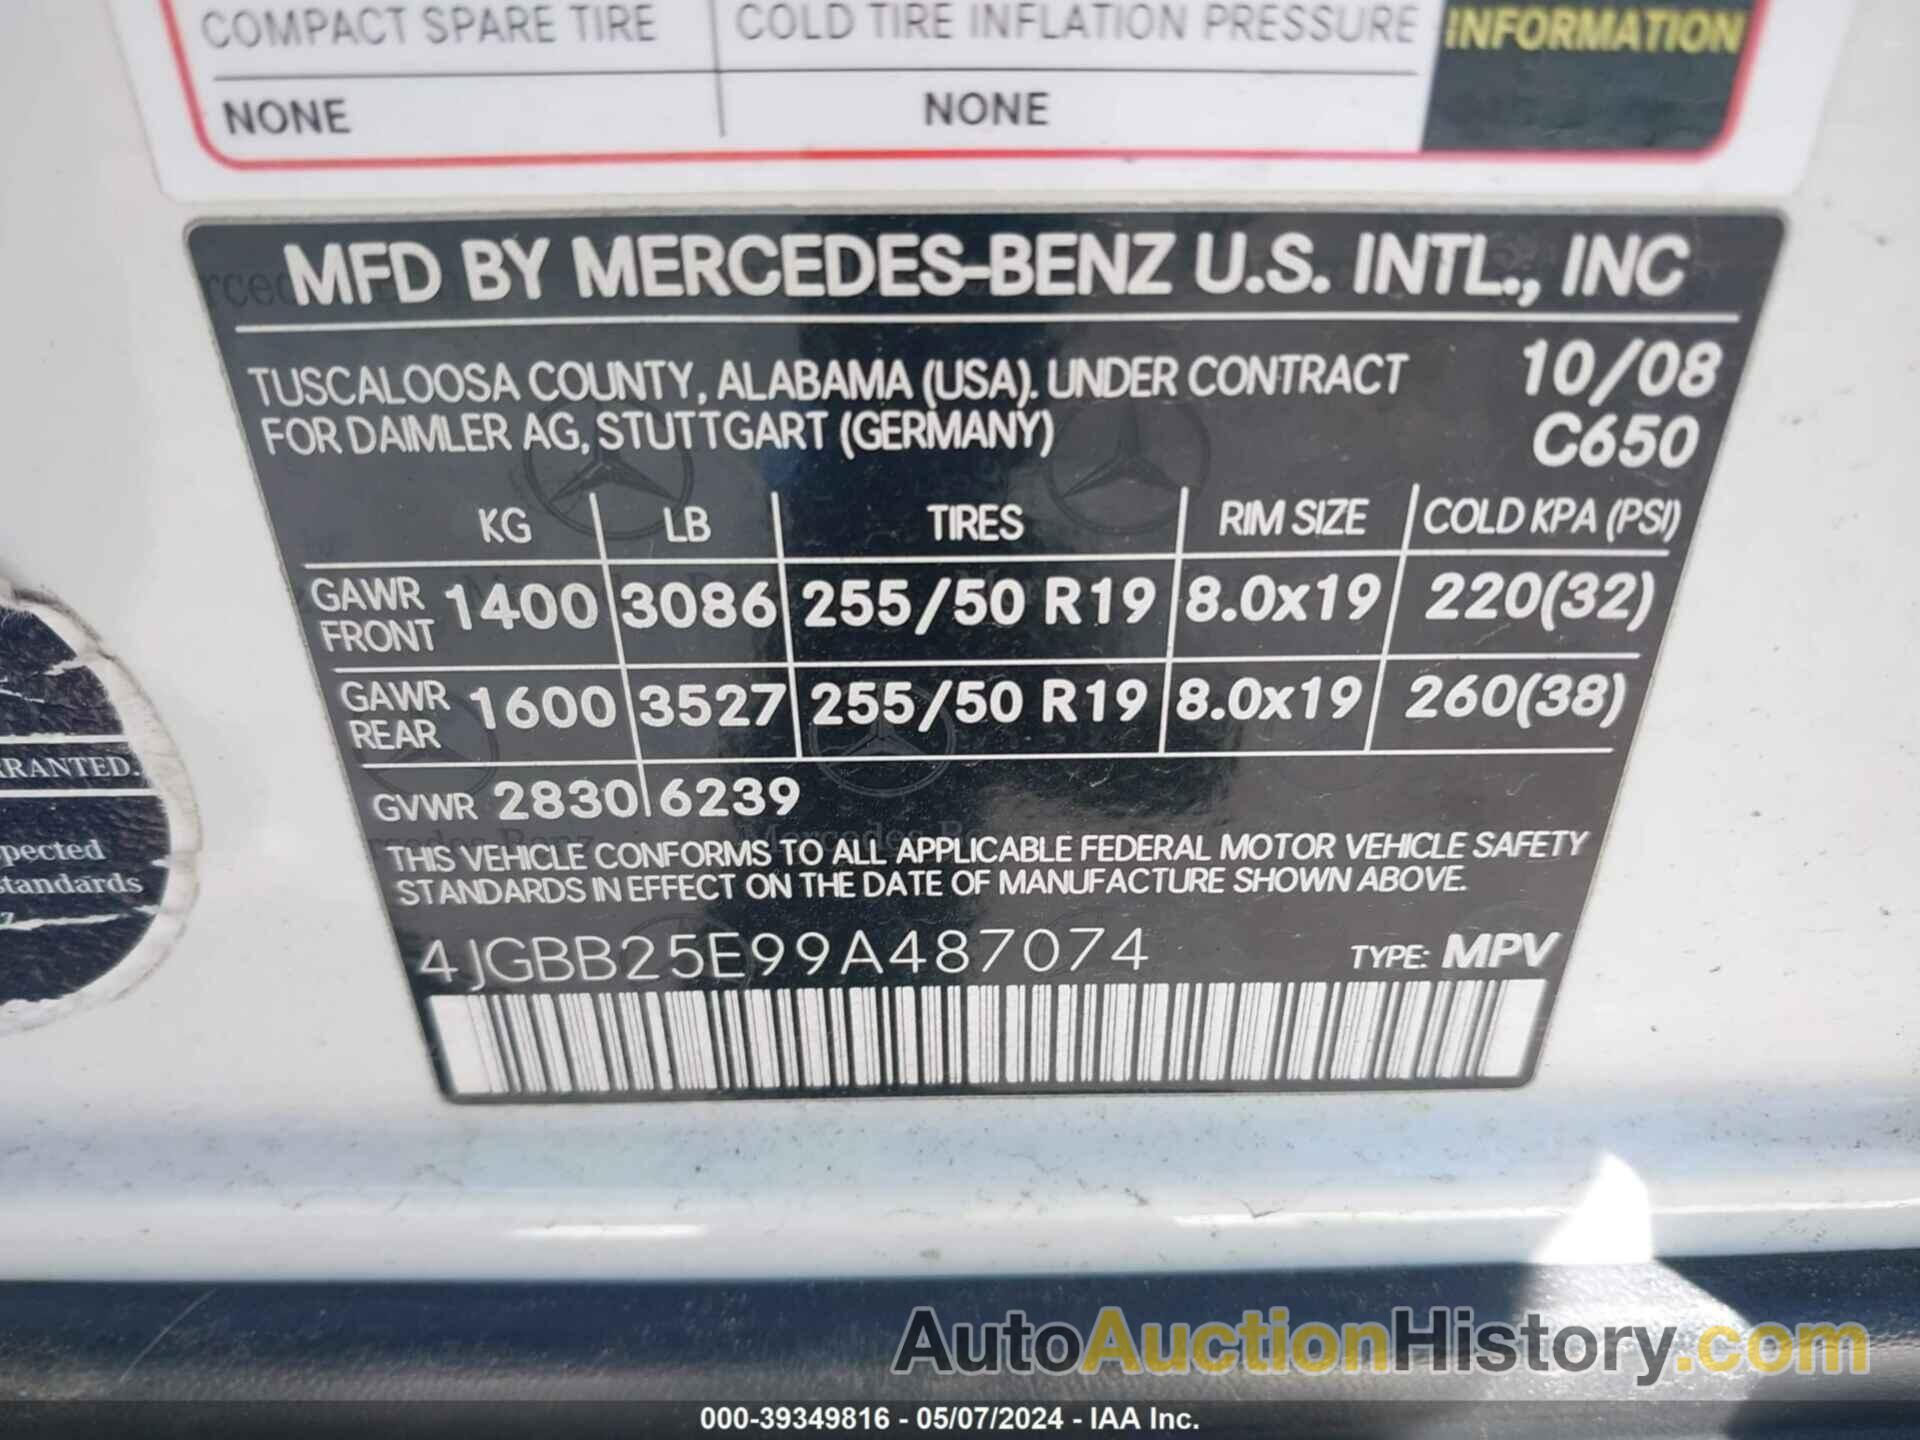 MERCEDES-BENZ ML 320 BLUETEC 4MATIC, 4JGBB25E99A487074